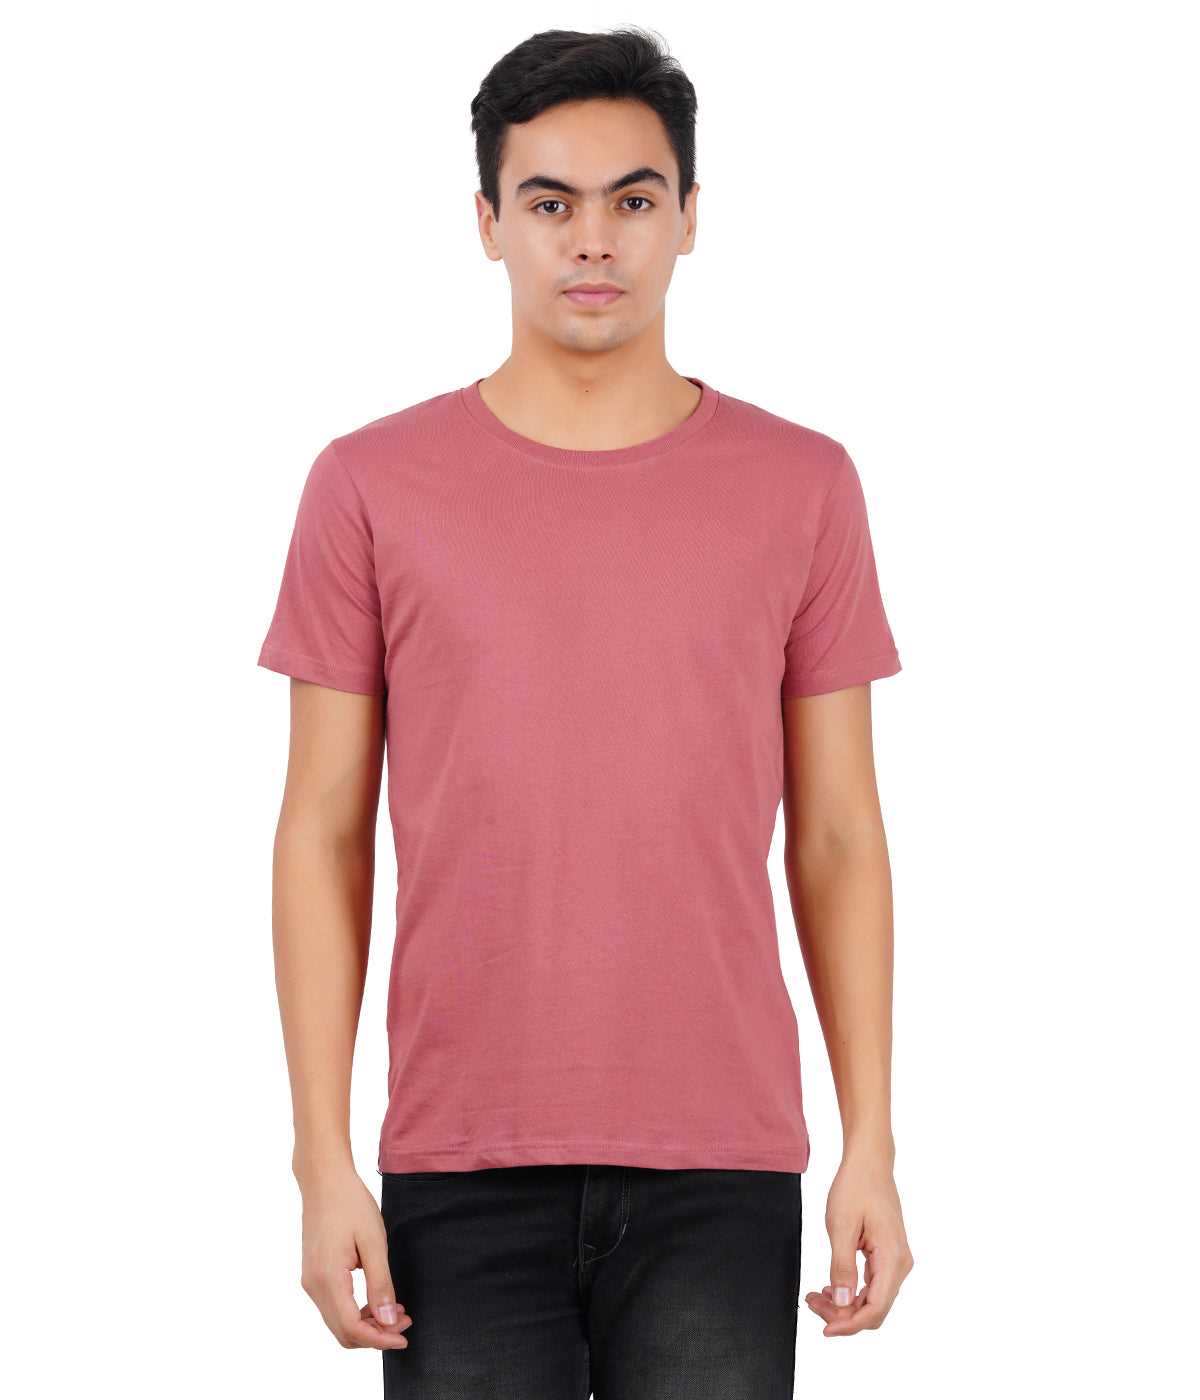 Buy round neck t-shirt online